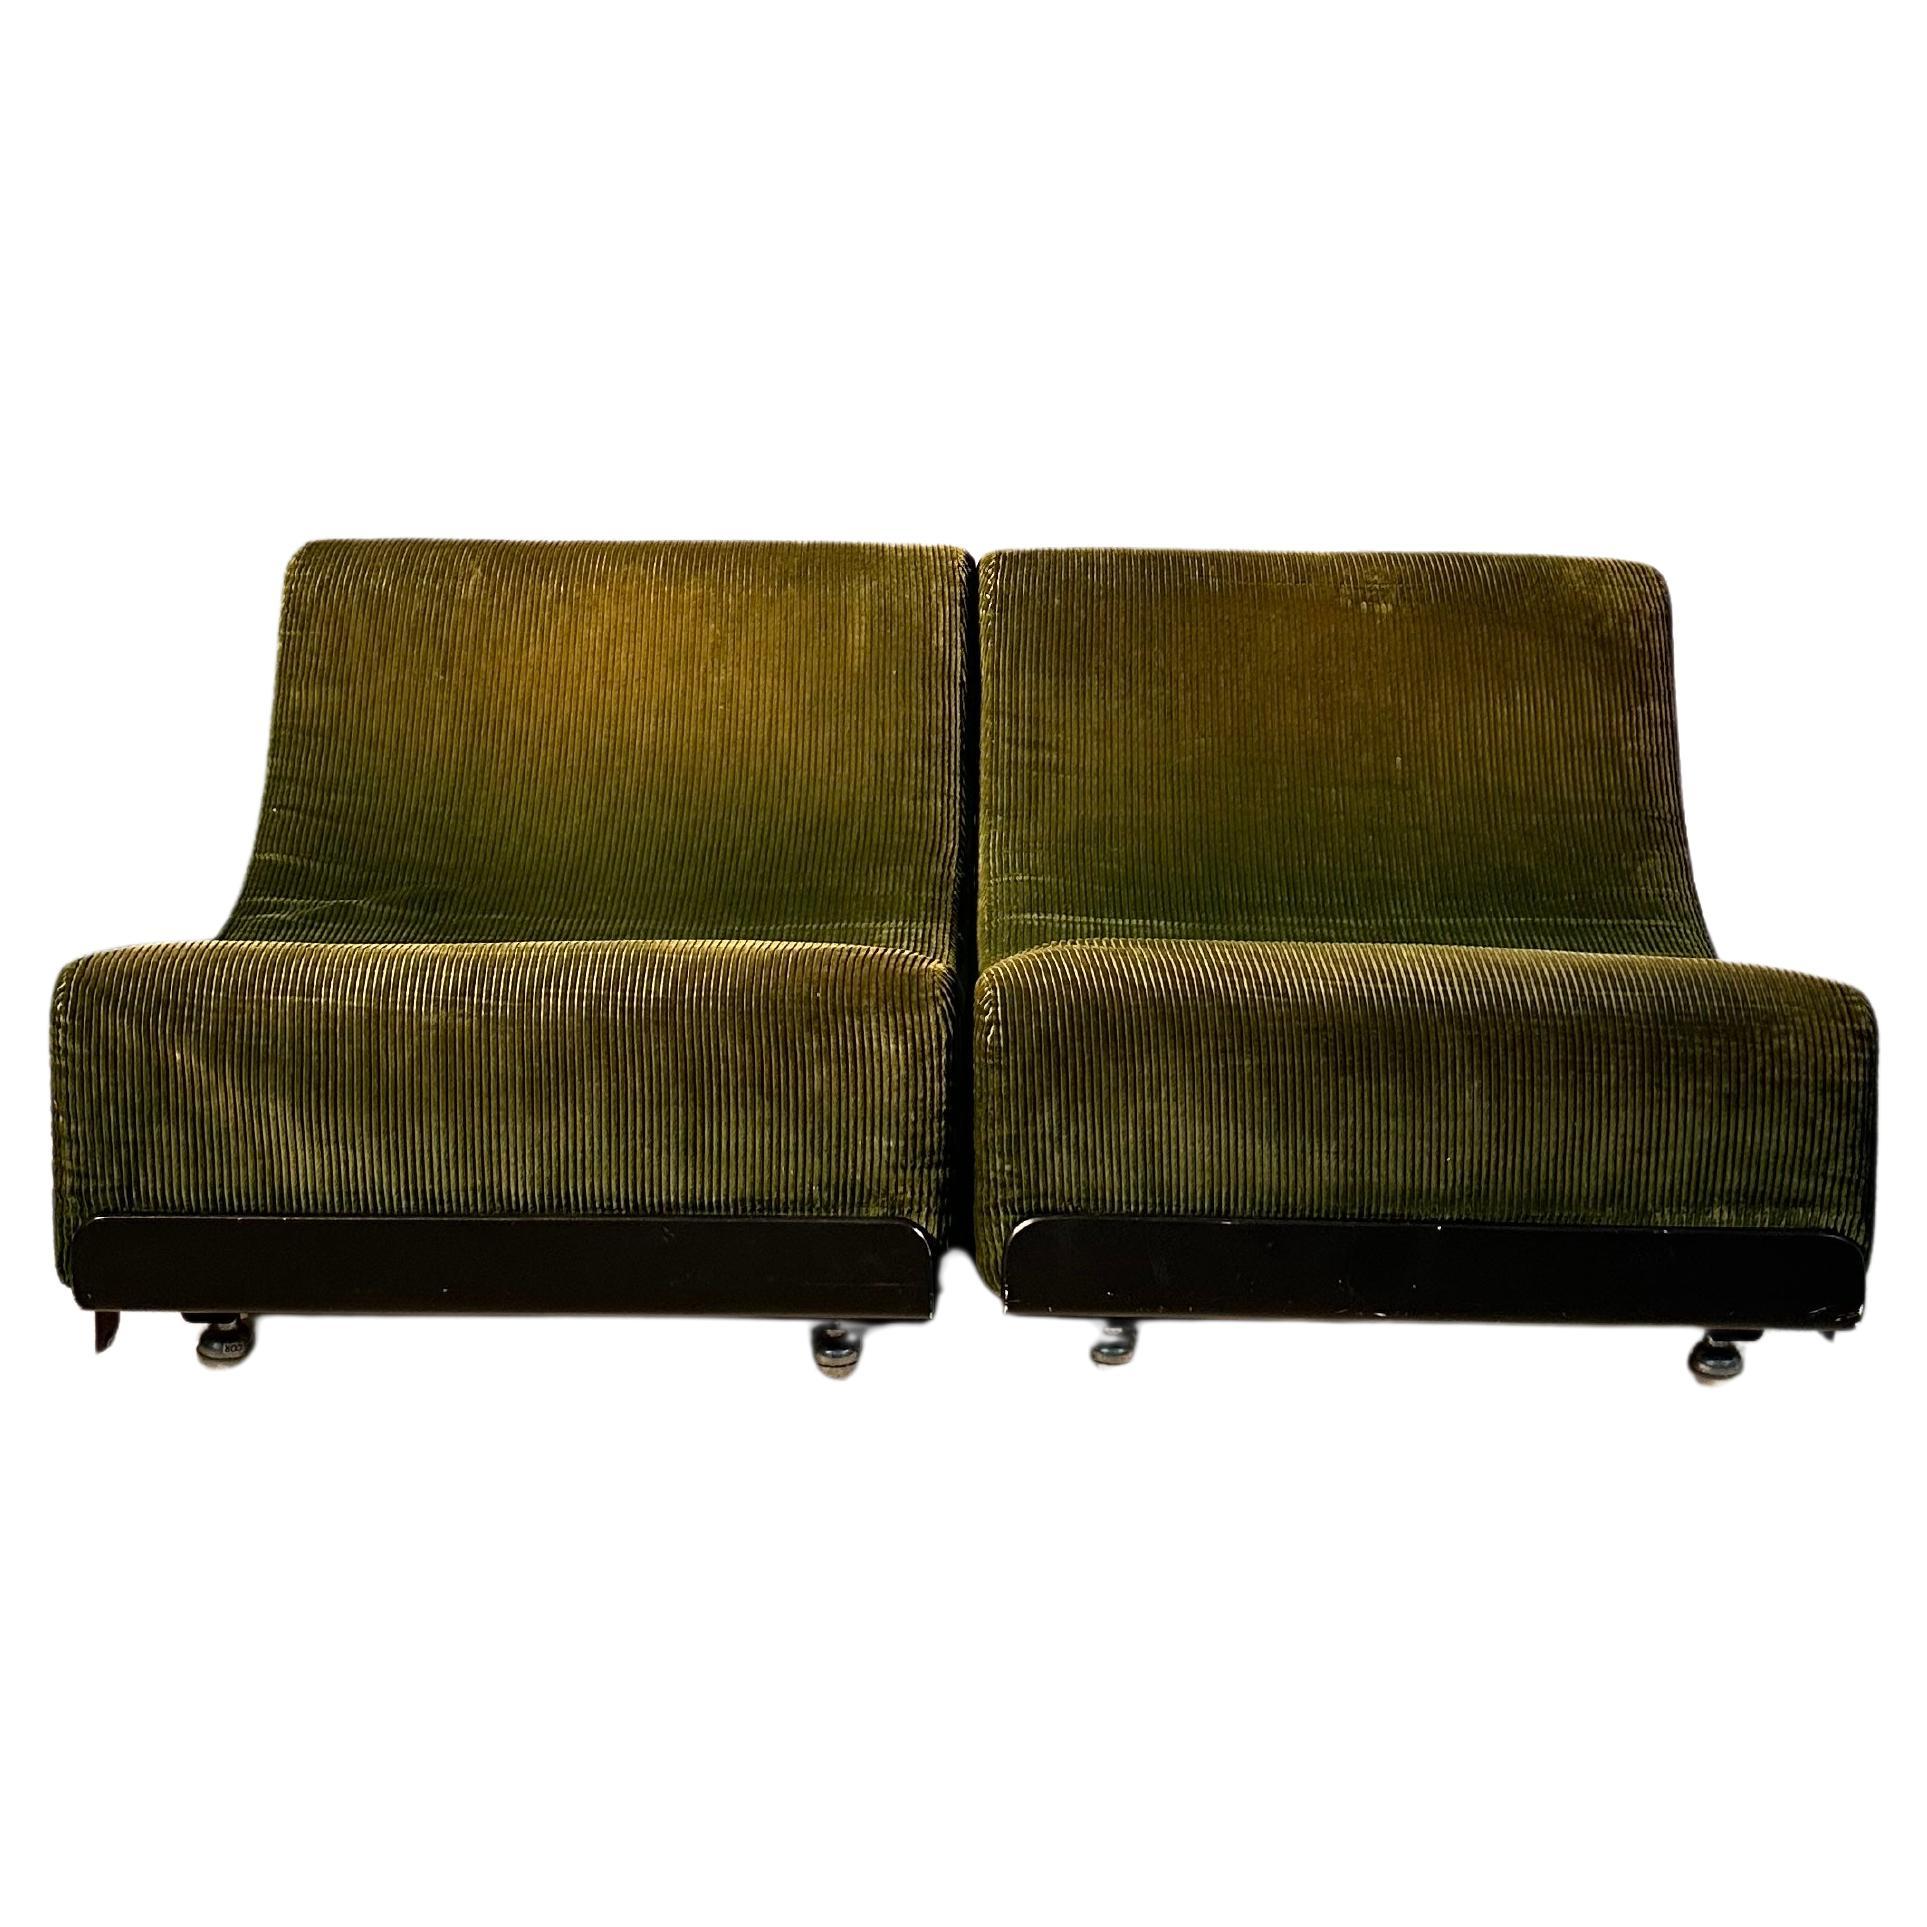 Modulares Sofa-Set aus Kor von Luigi Colani 